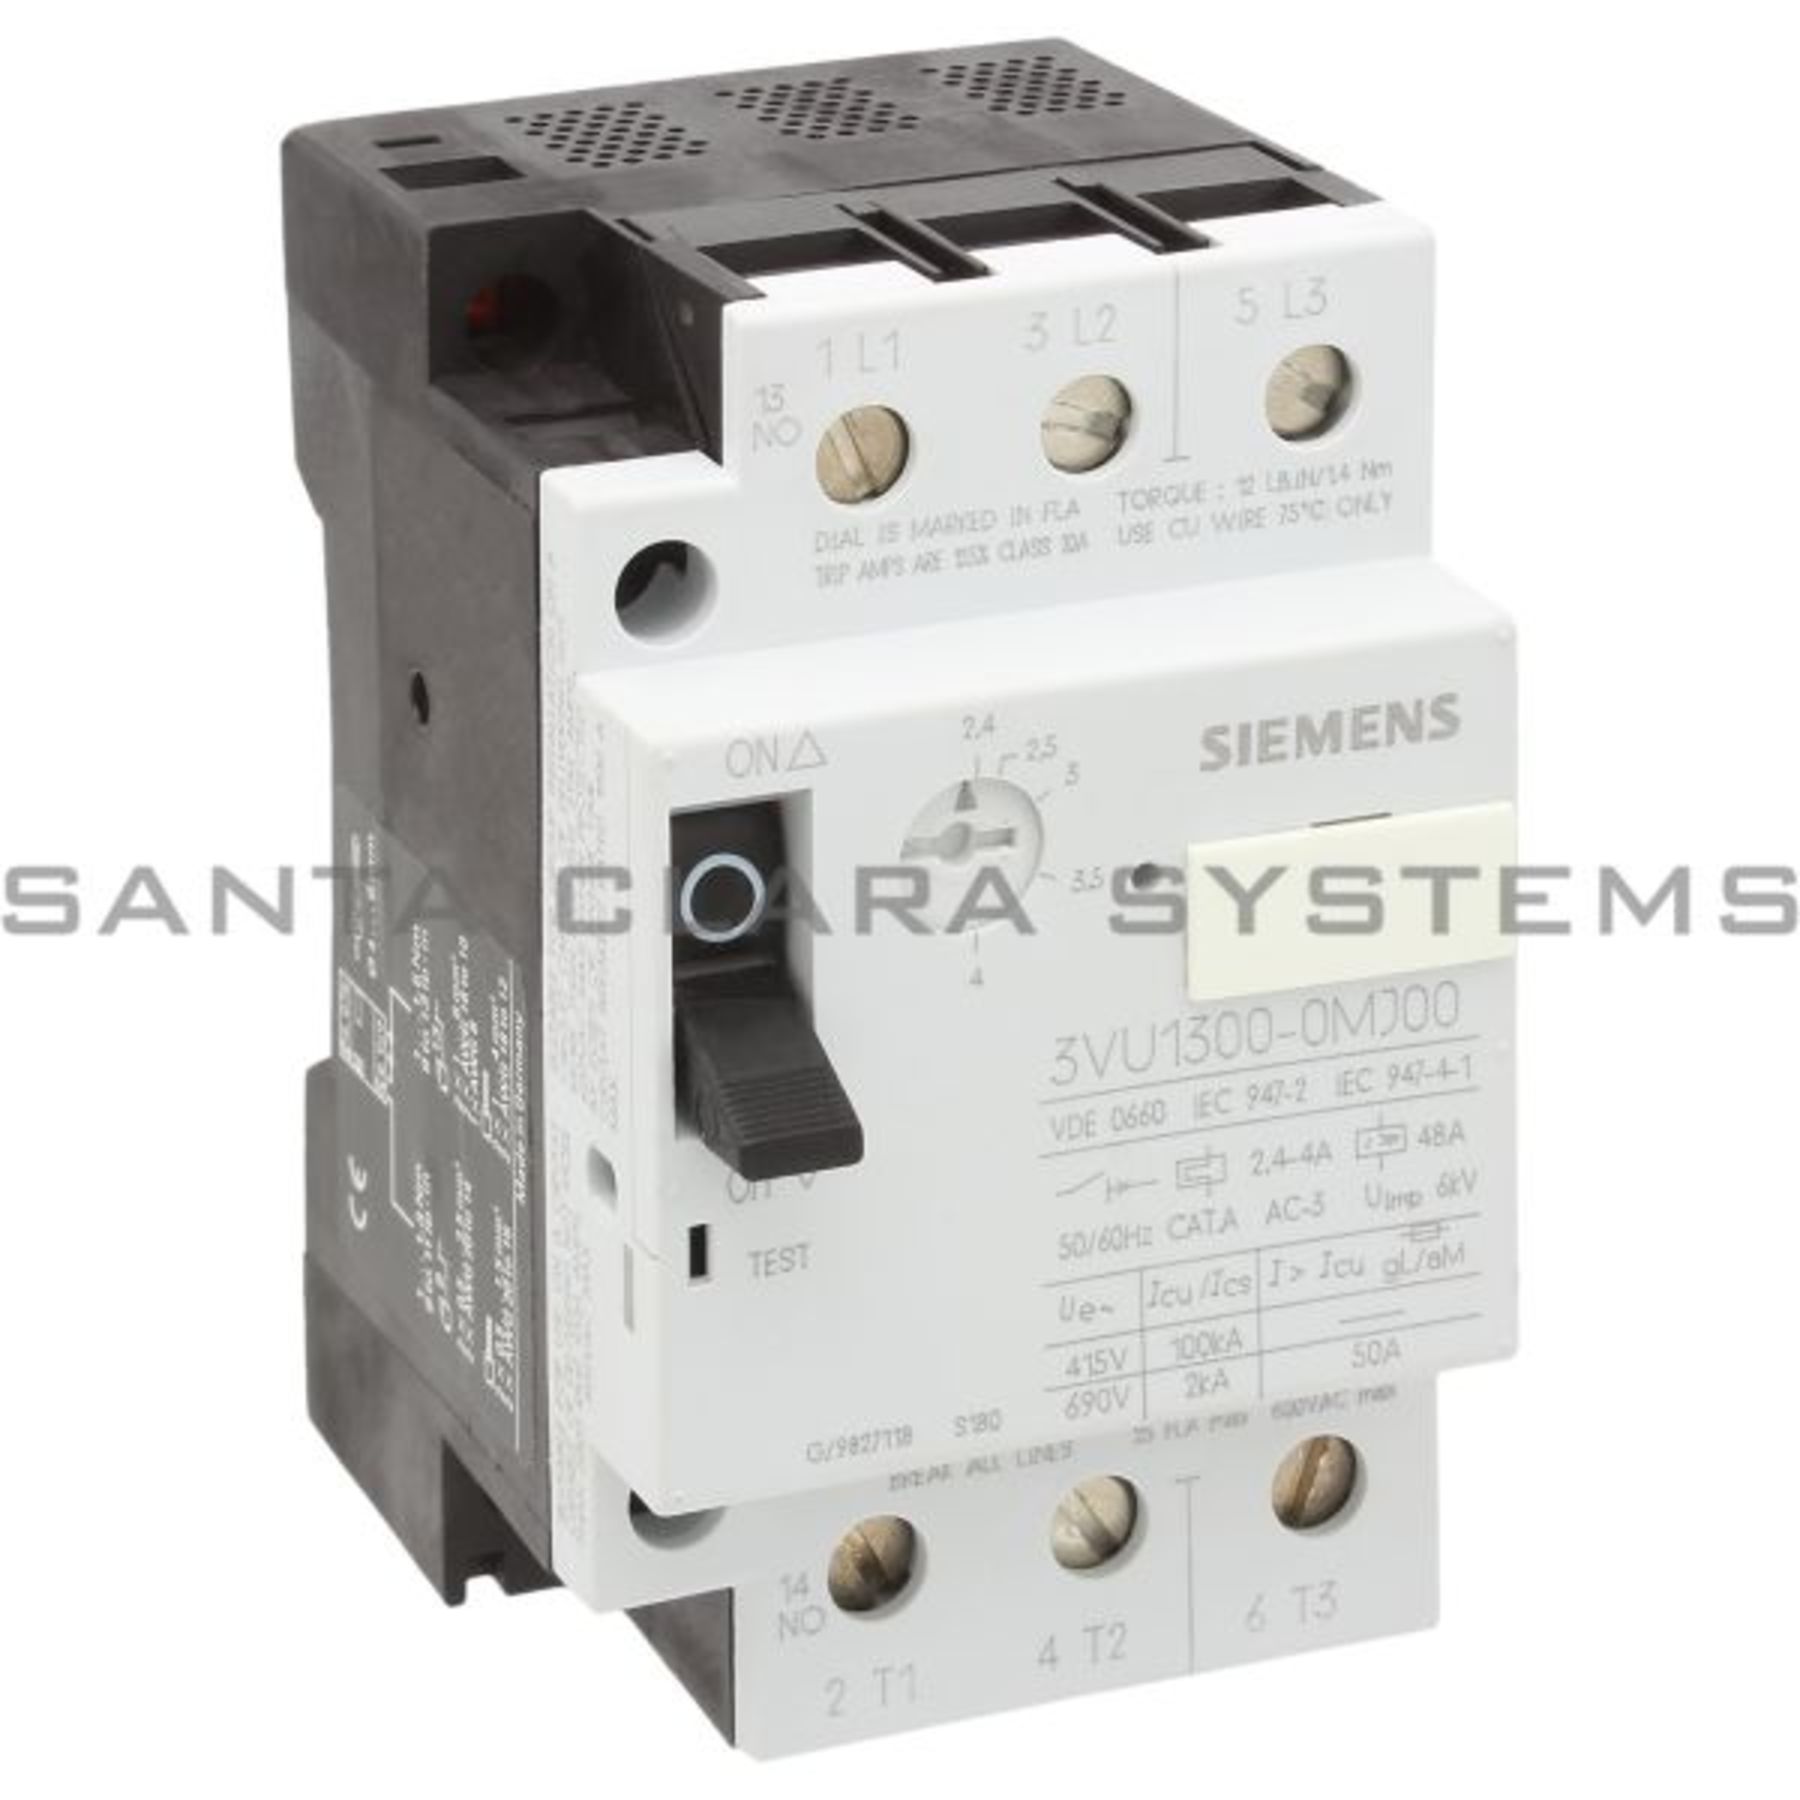 Siemens 3vu1300-0mg00 motor disyuntor 1,0-1,6a sin usar